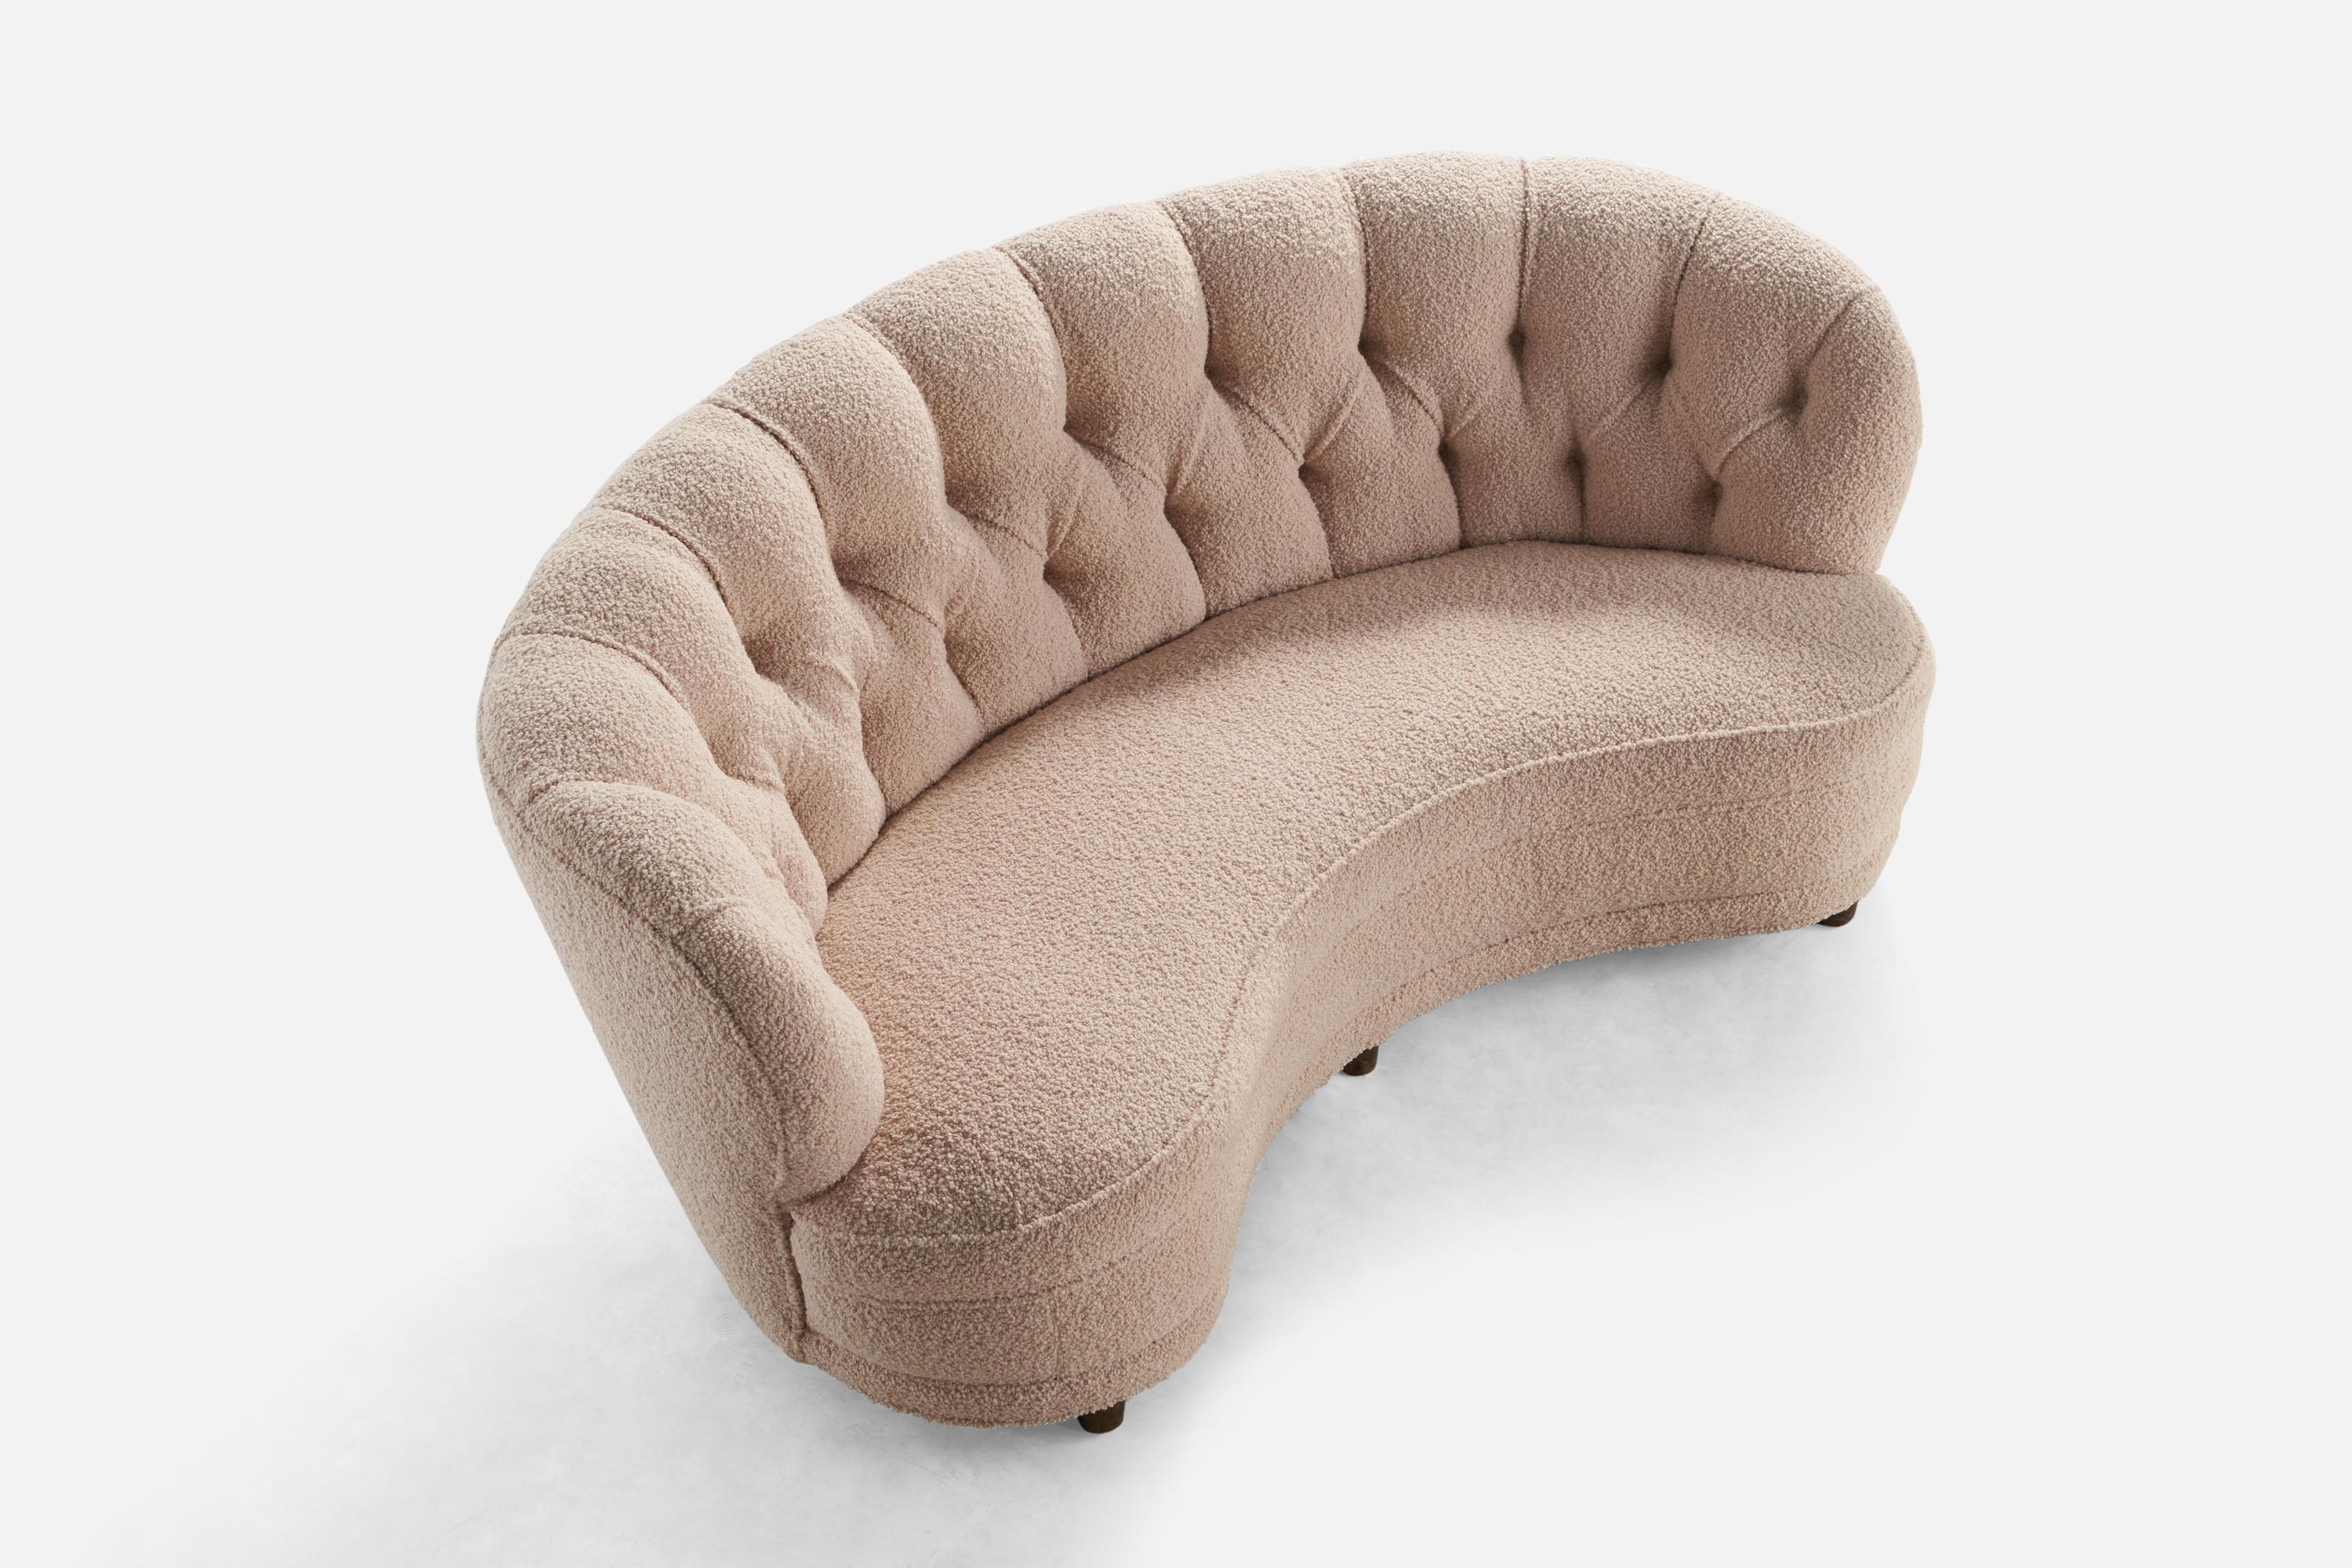 Canapé organique en bouleau teinté foncé et tissu bouclé rose pâle, conçu et produit en Finlande dans les années 1940.

Hauteur du siège : 15